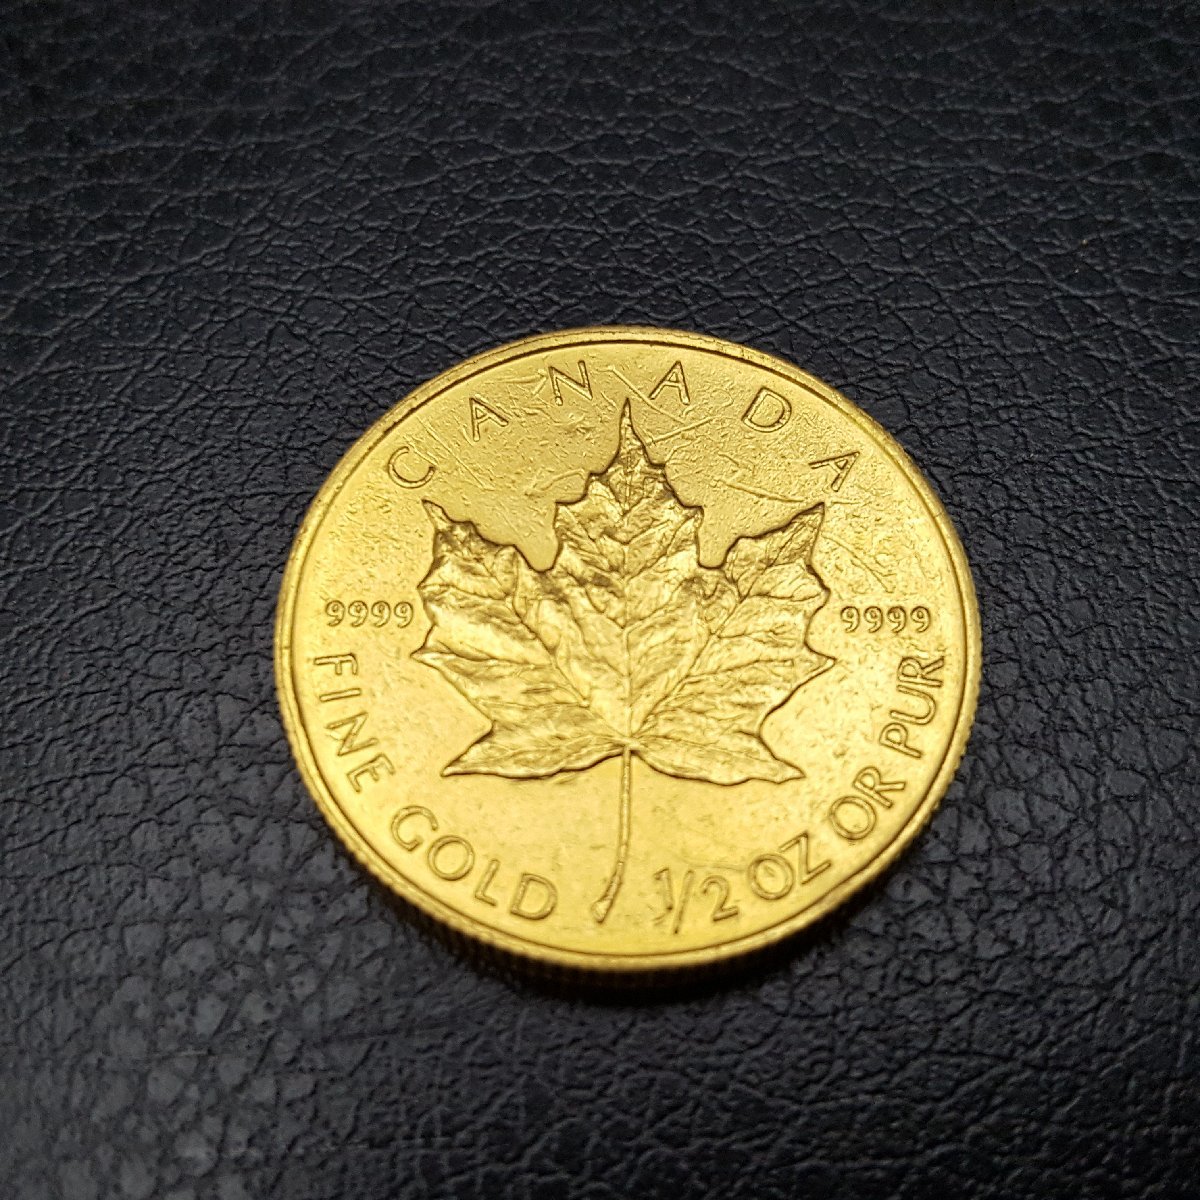 【宝蔵】 K24YG イエローゴールド コイン メープルリーフ 金貨 1/2oz エリザベス2世 20DOLLARS 1995 CANADA 純金 15.6g 記念